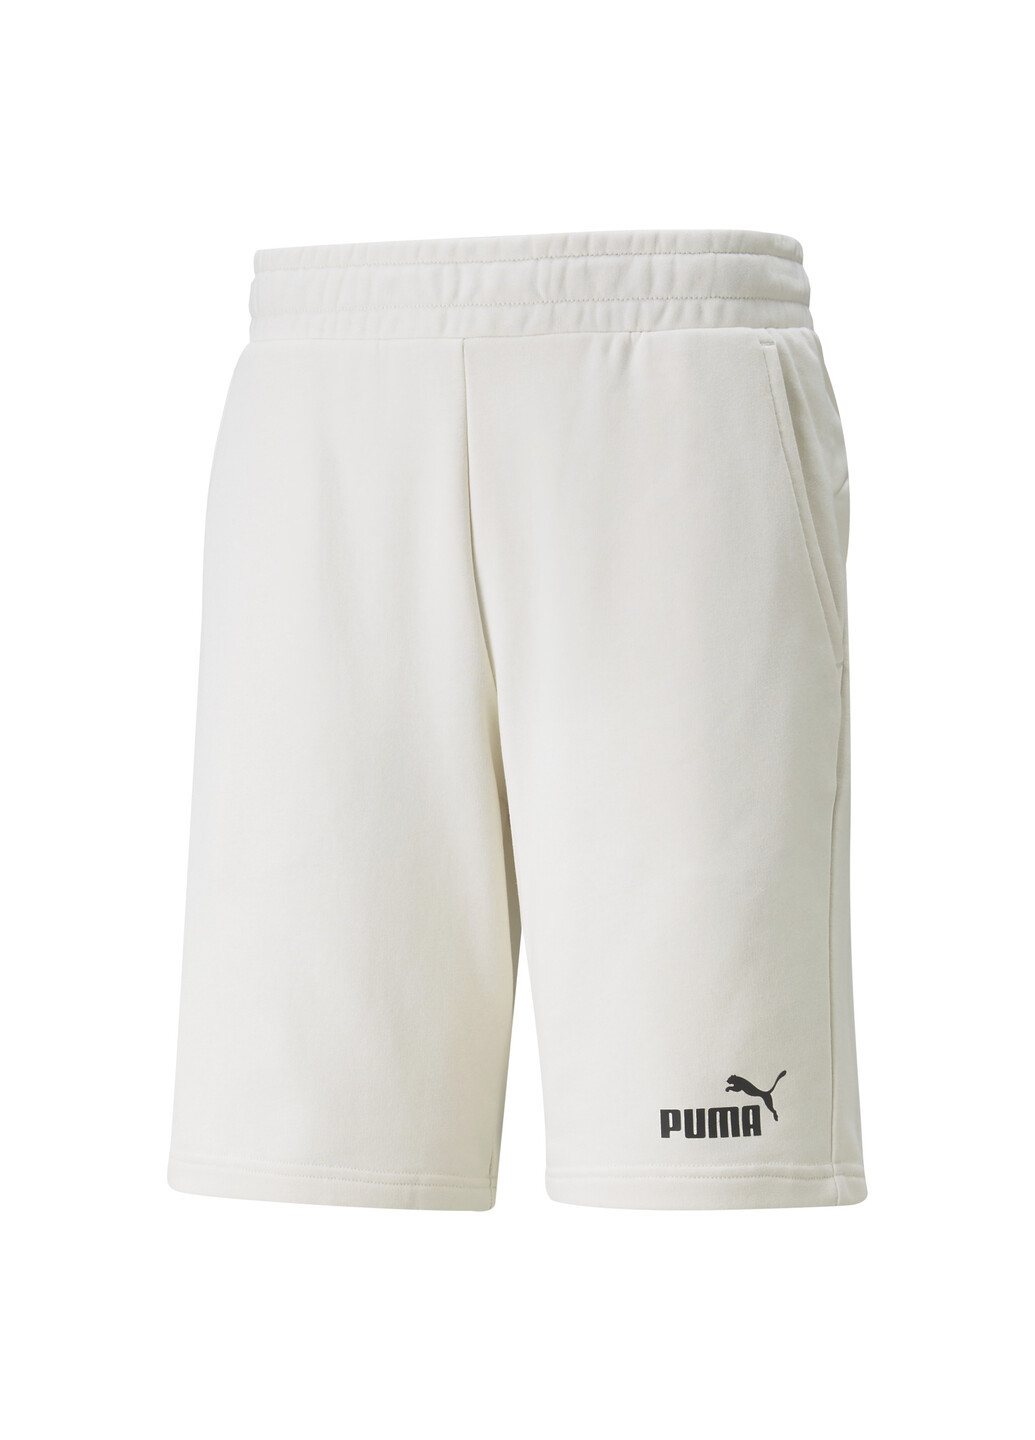 Шорты Essentials Men's Shorts Puma однотонные белые спортивные хлопок, полиэстер